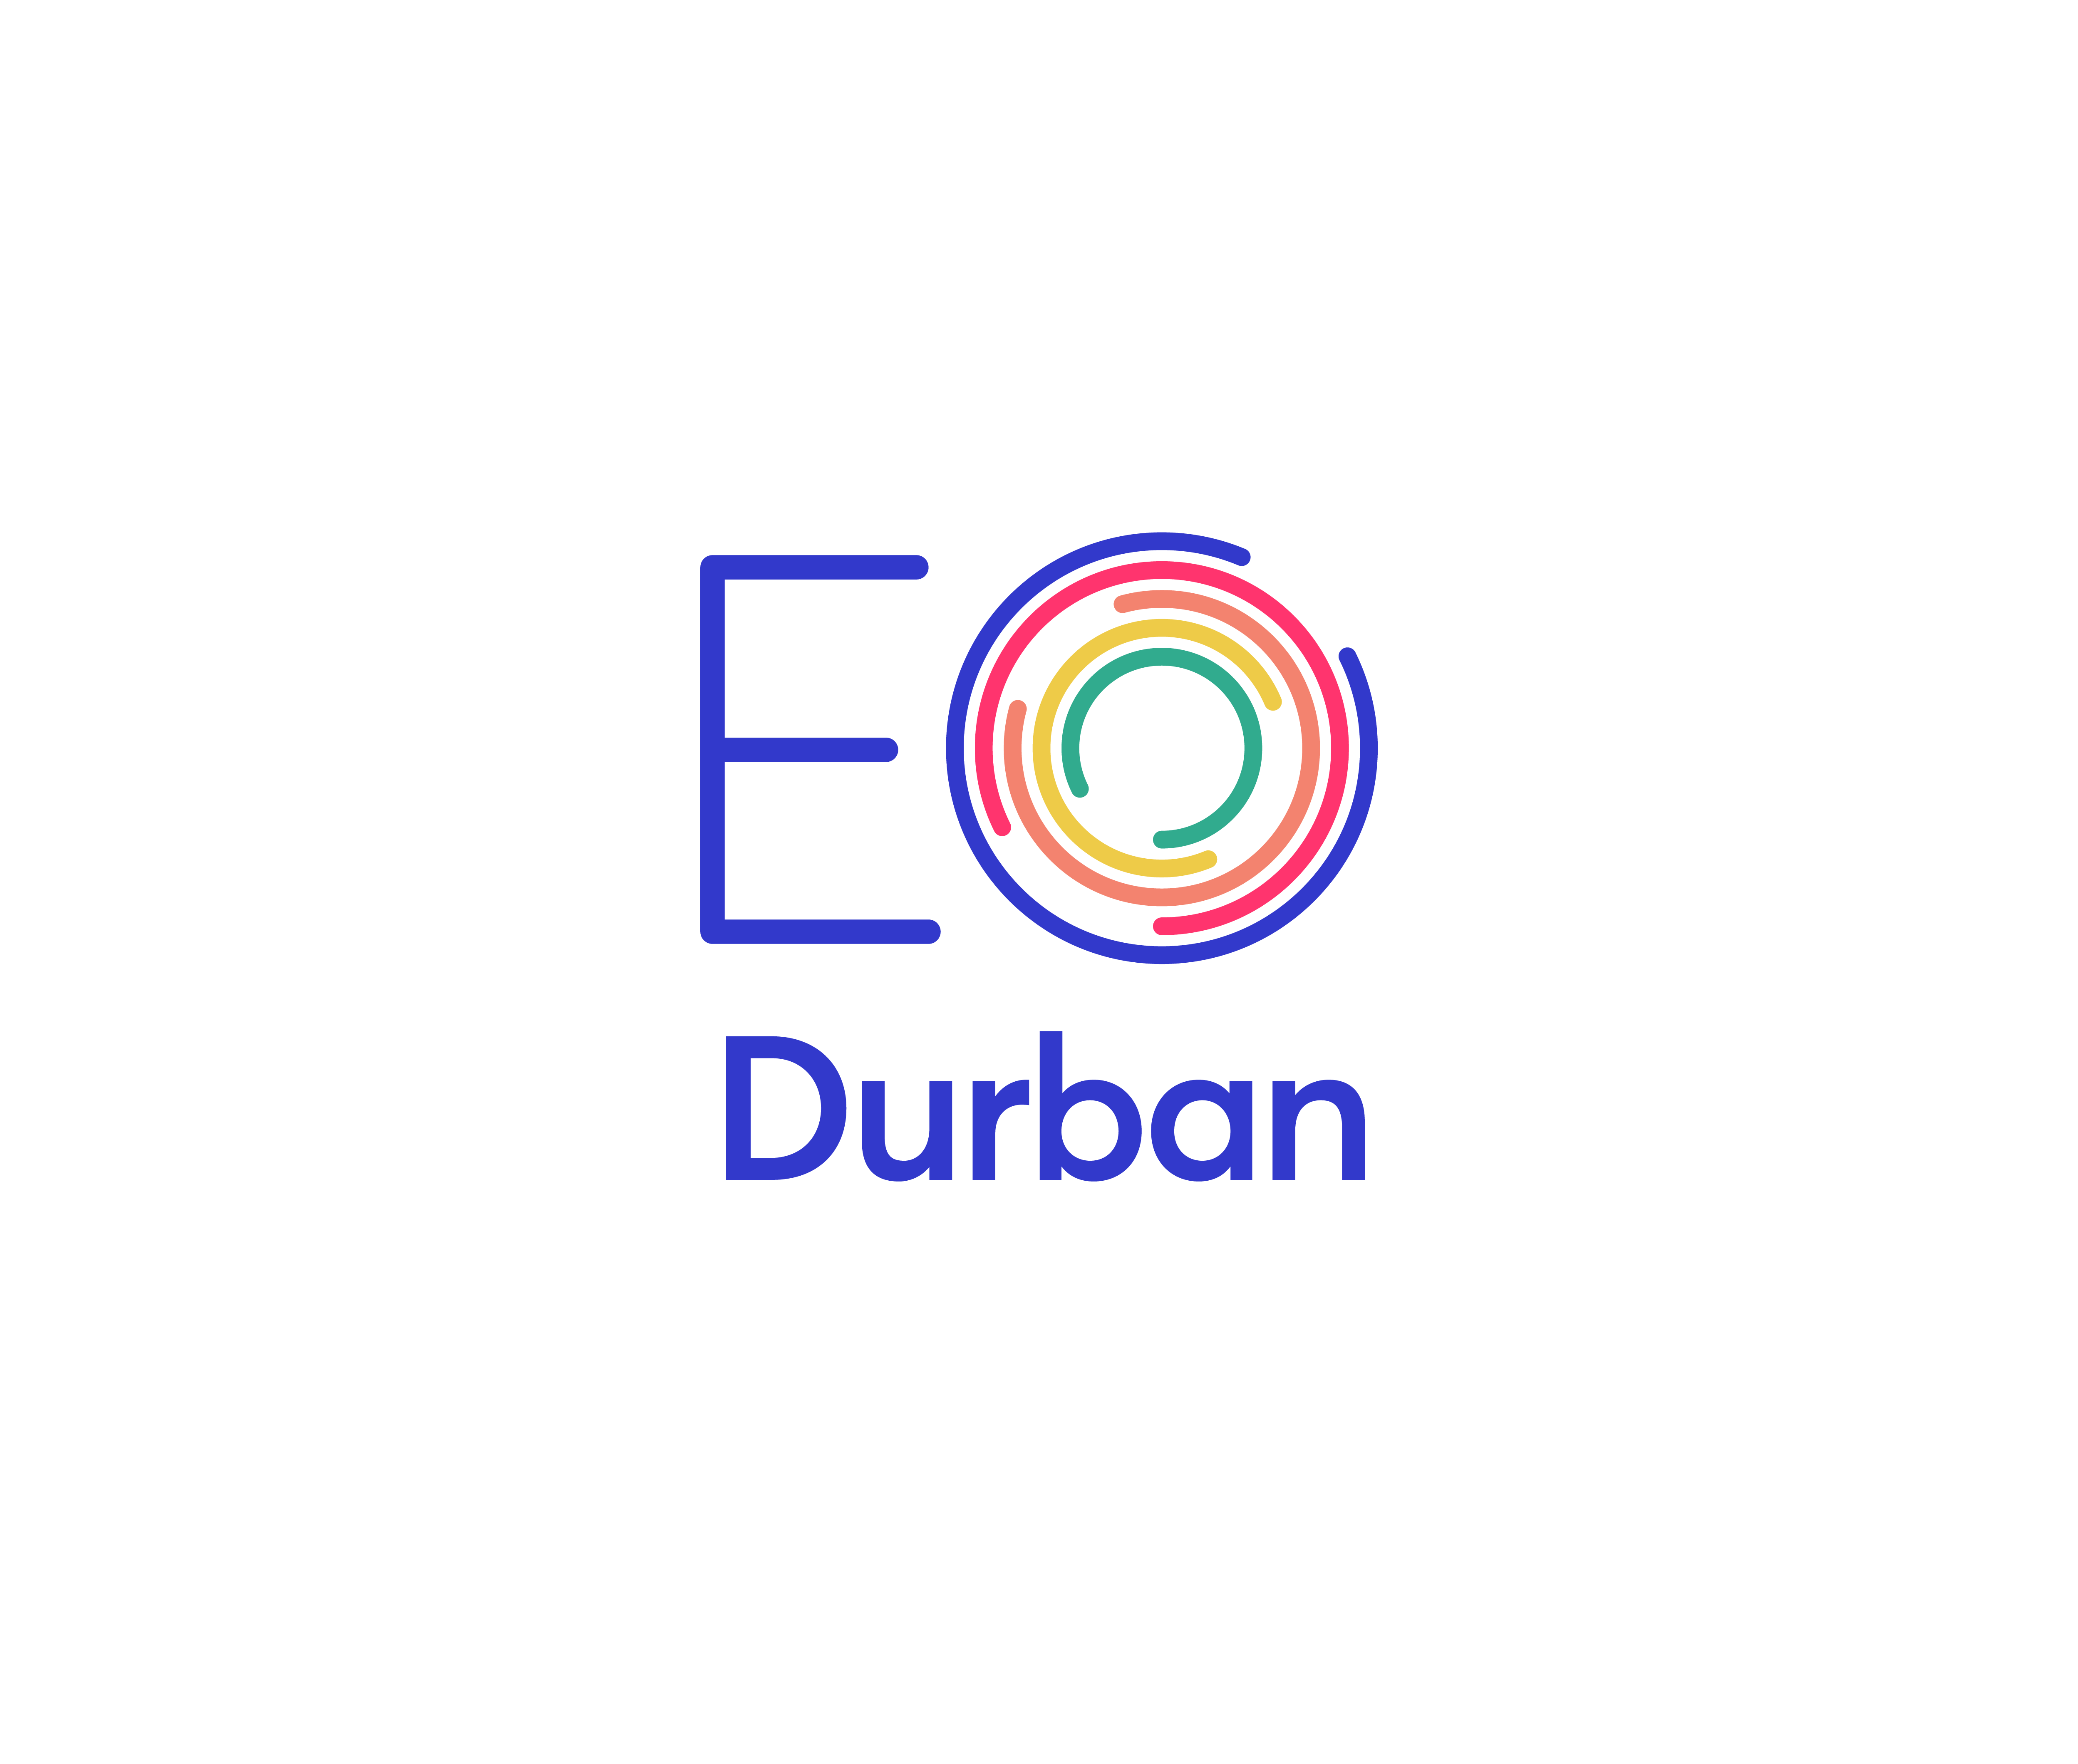 EO_Durban_RGB_stacked